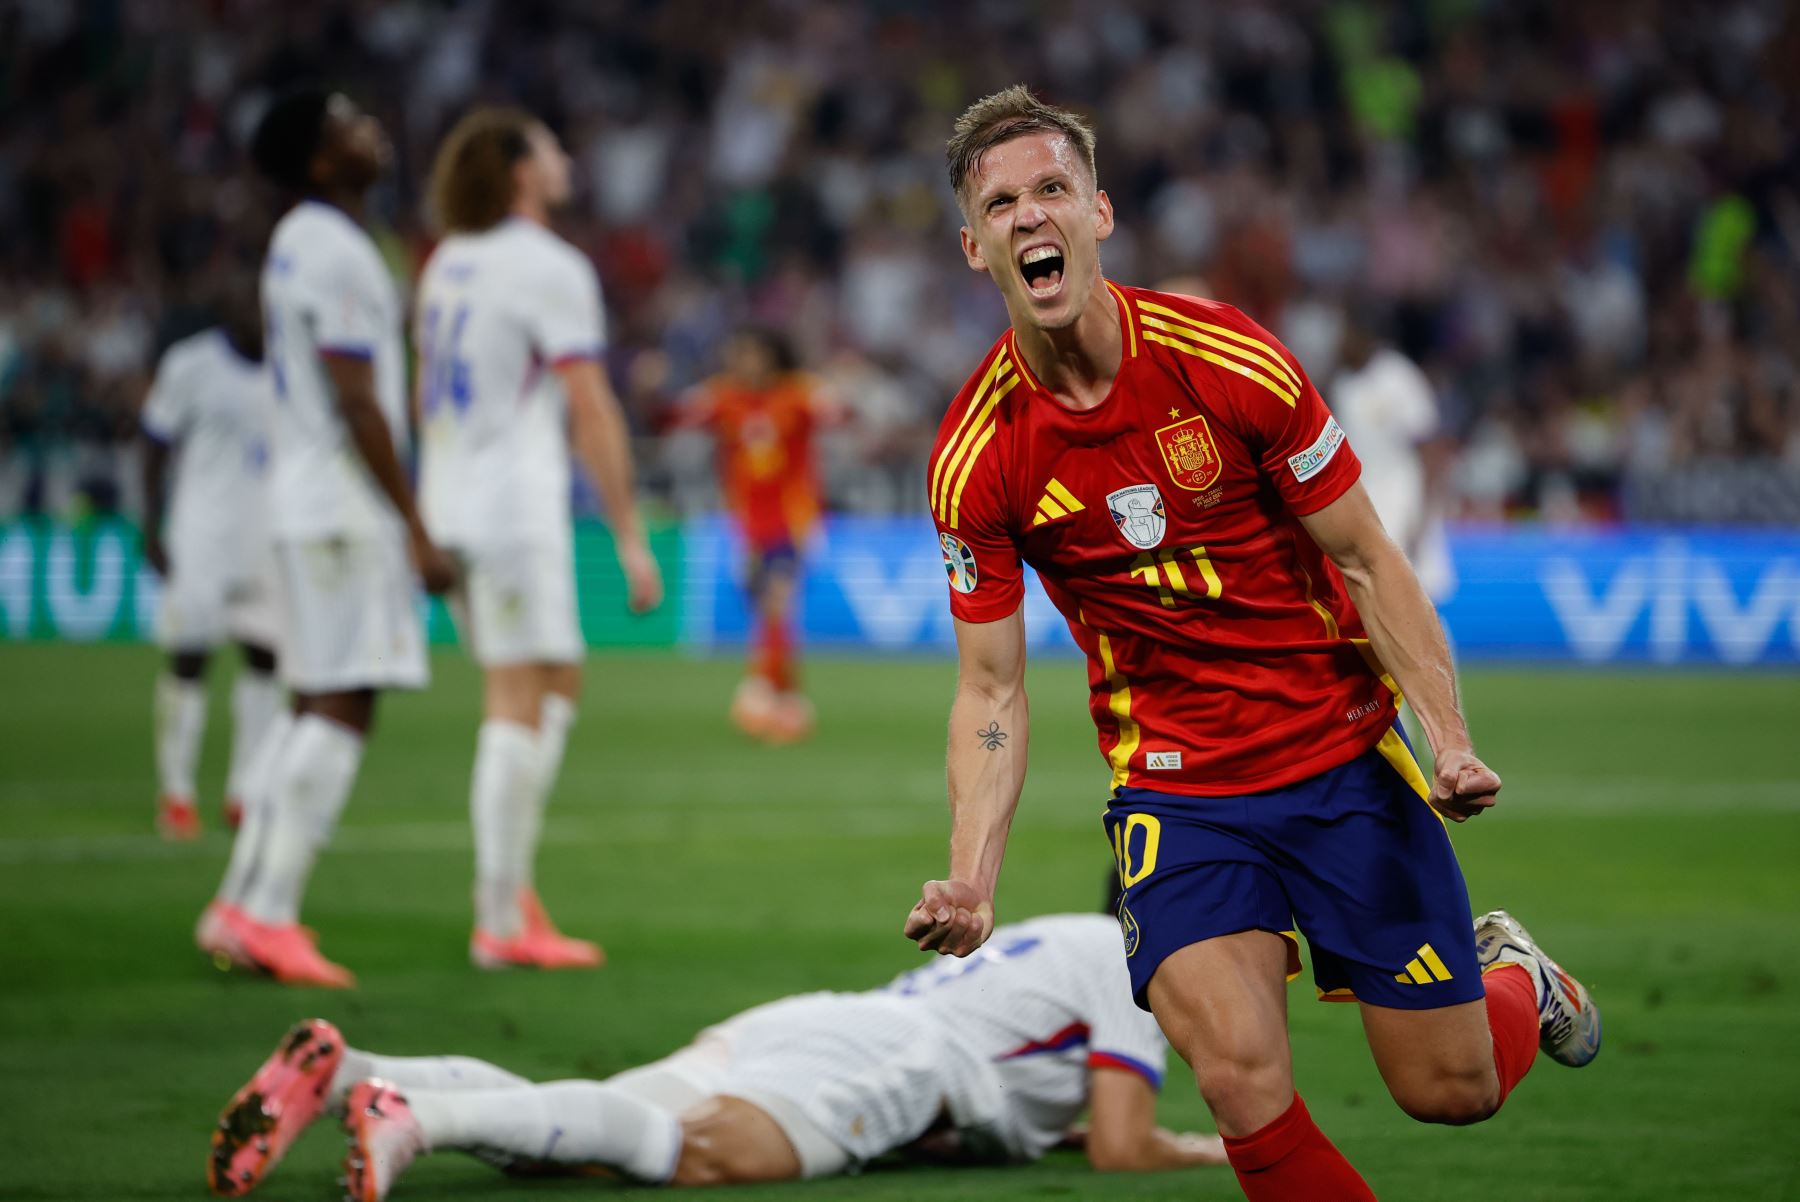 El centrocampista de la selección española Dani Olmo celebra tras marcar el segundo gol ante Francia, durante el partido de semifinales de la Eurocopa de fútbol que España y Francia disputan este martes en Múnich. Foto: EFE